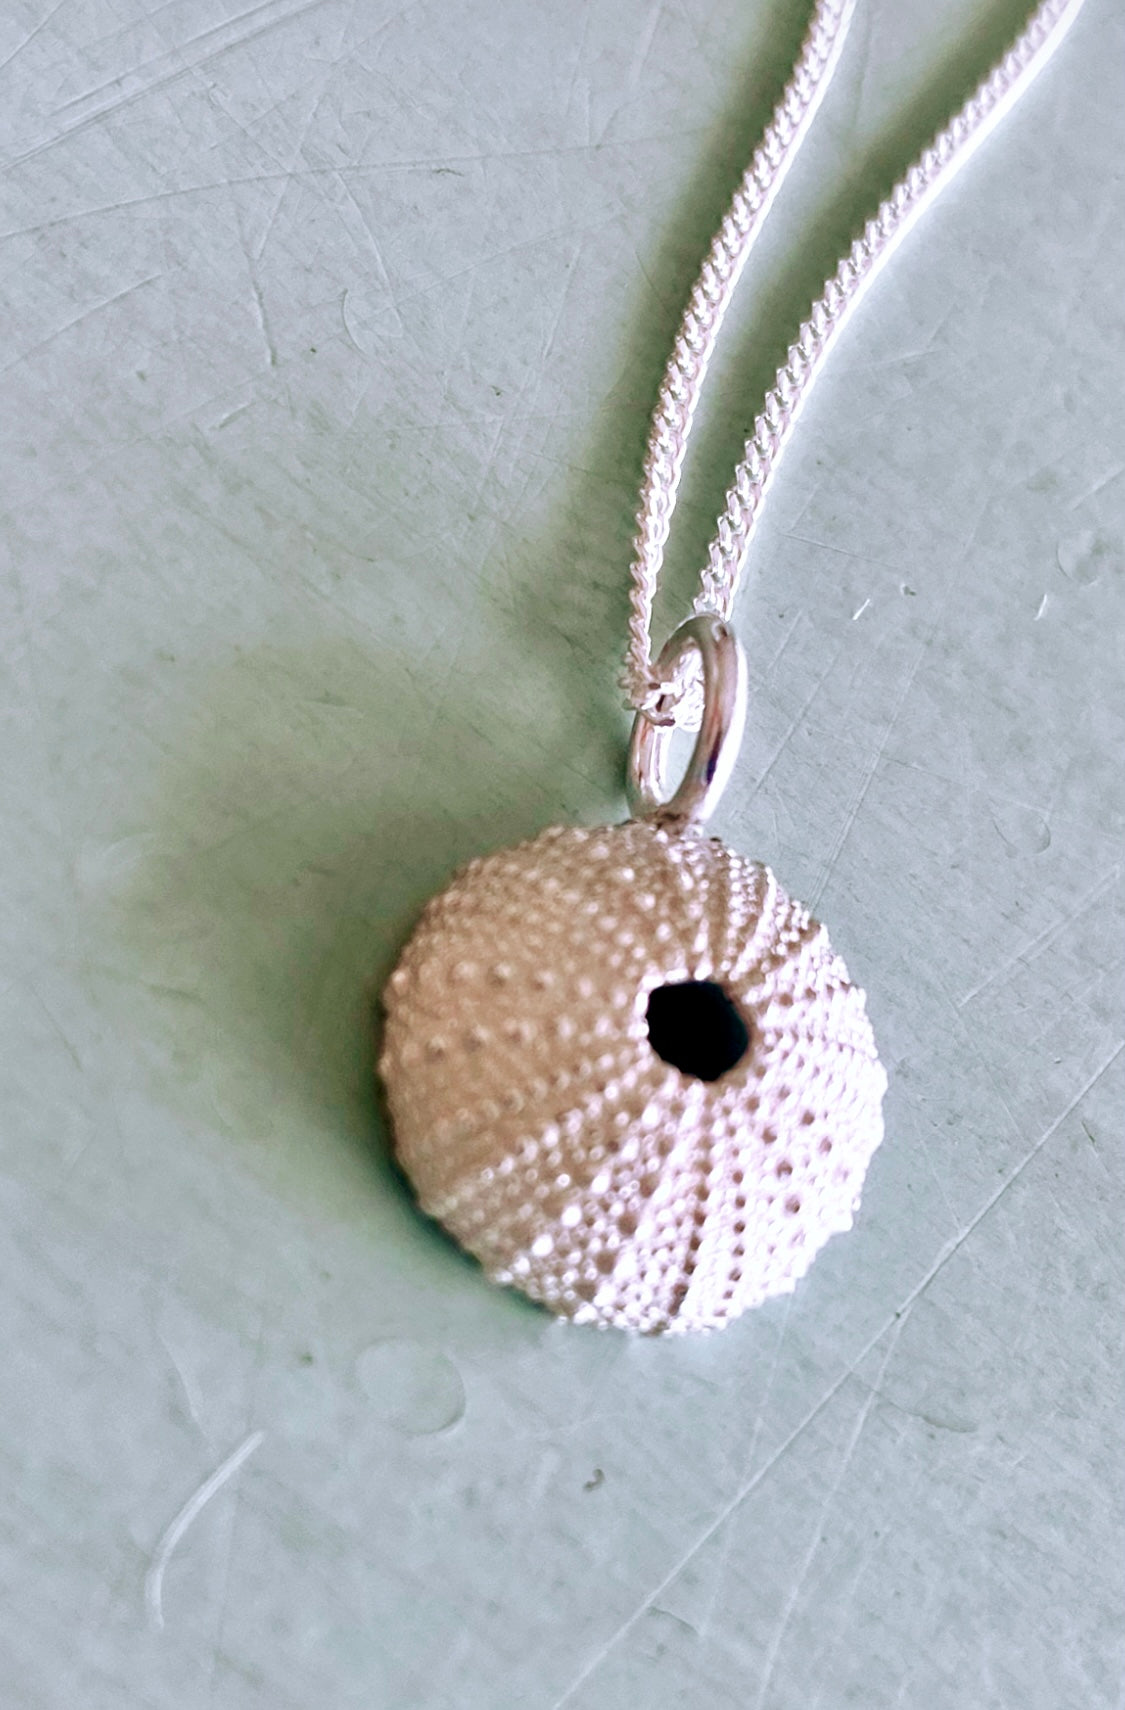 Small silver sea urchin pendant with chain